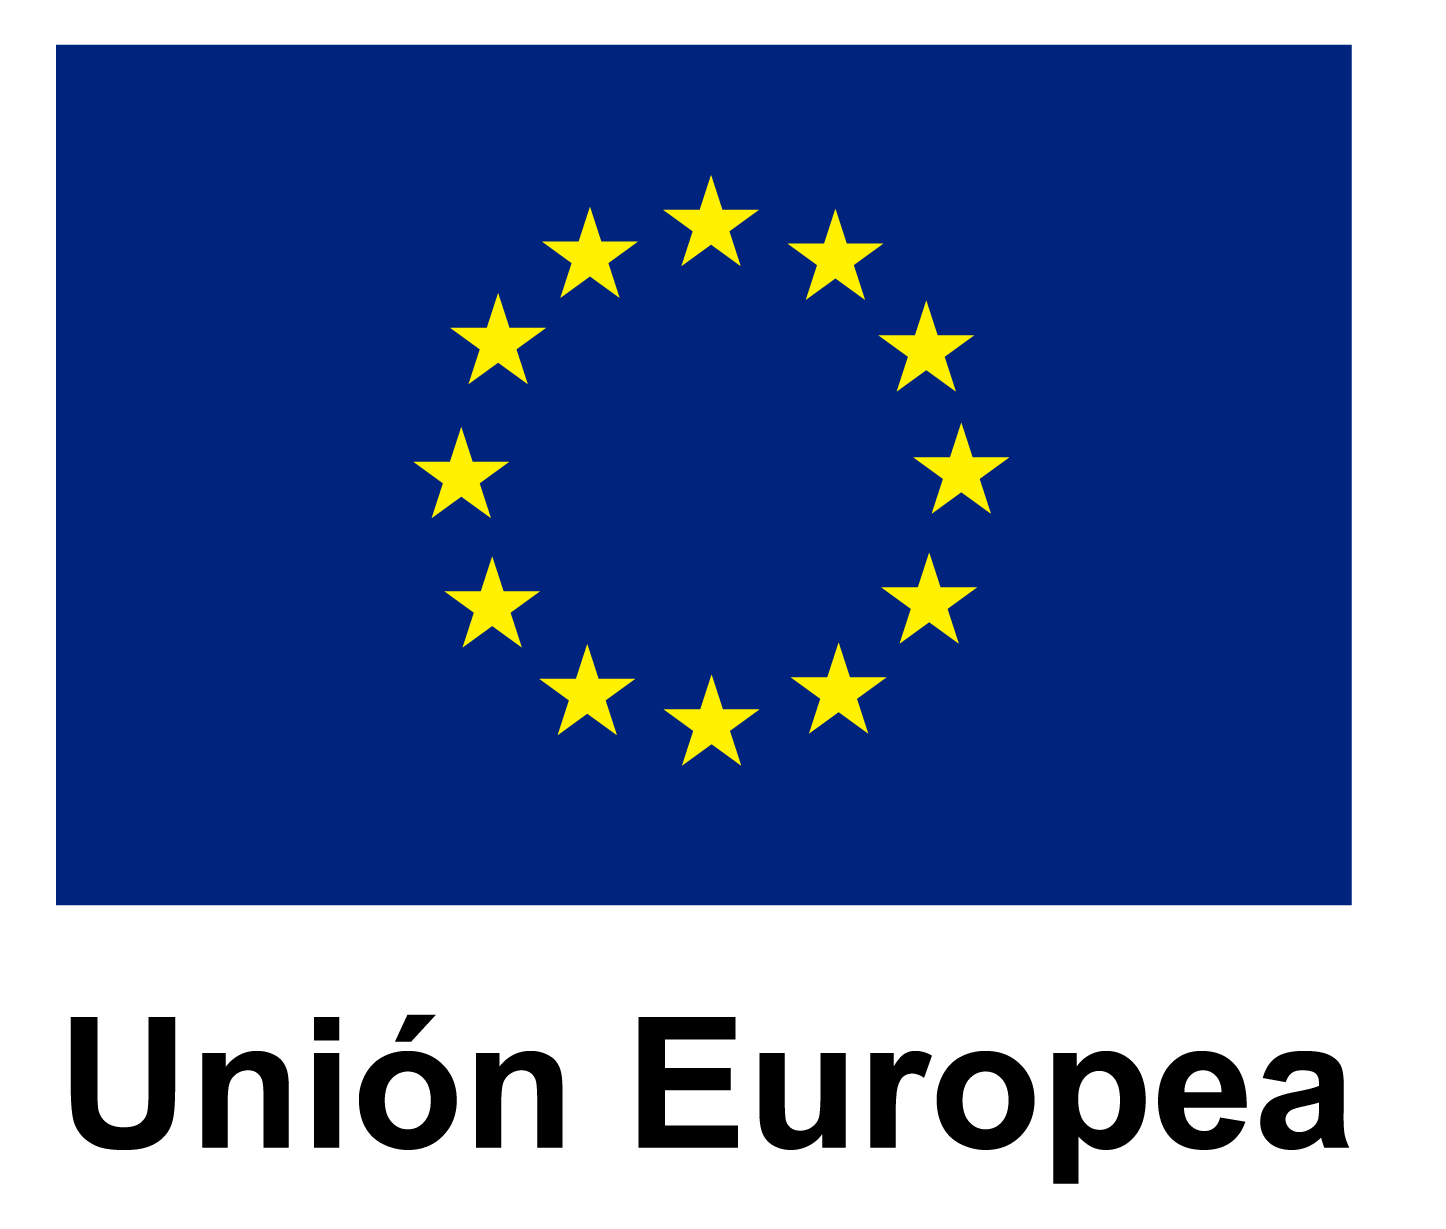 la bandiera dell'unione europea è blu con stelle gialle in un cerchio